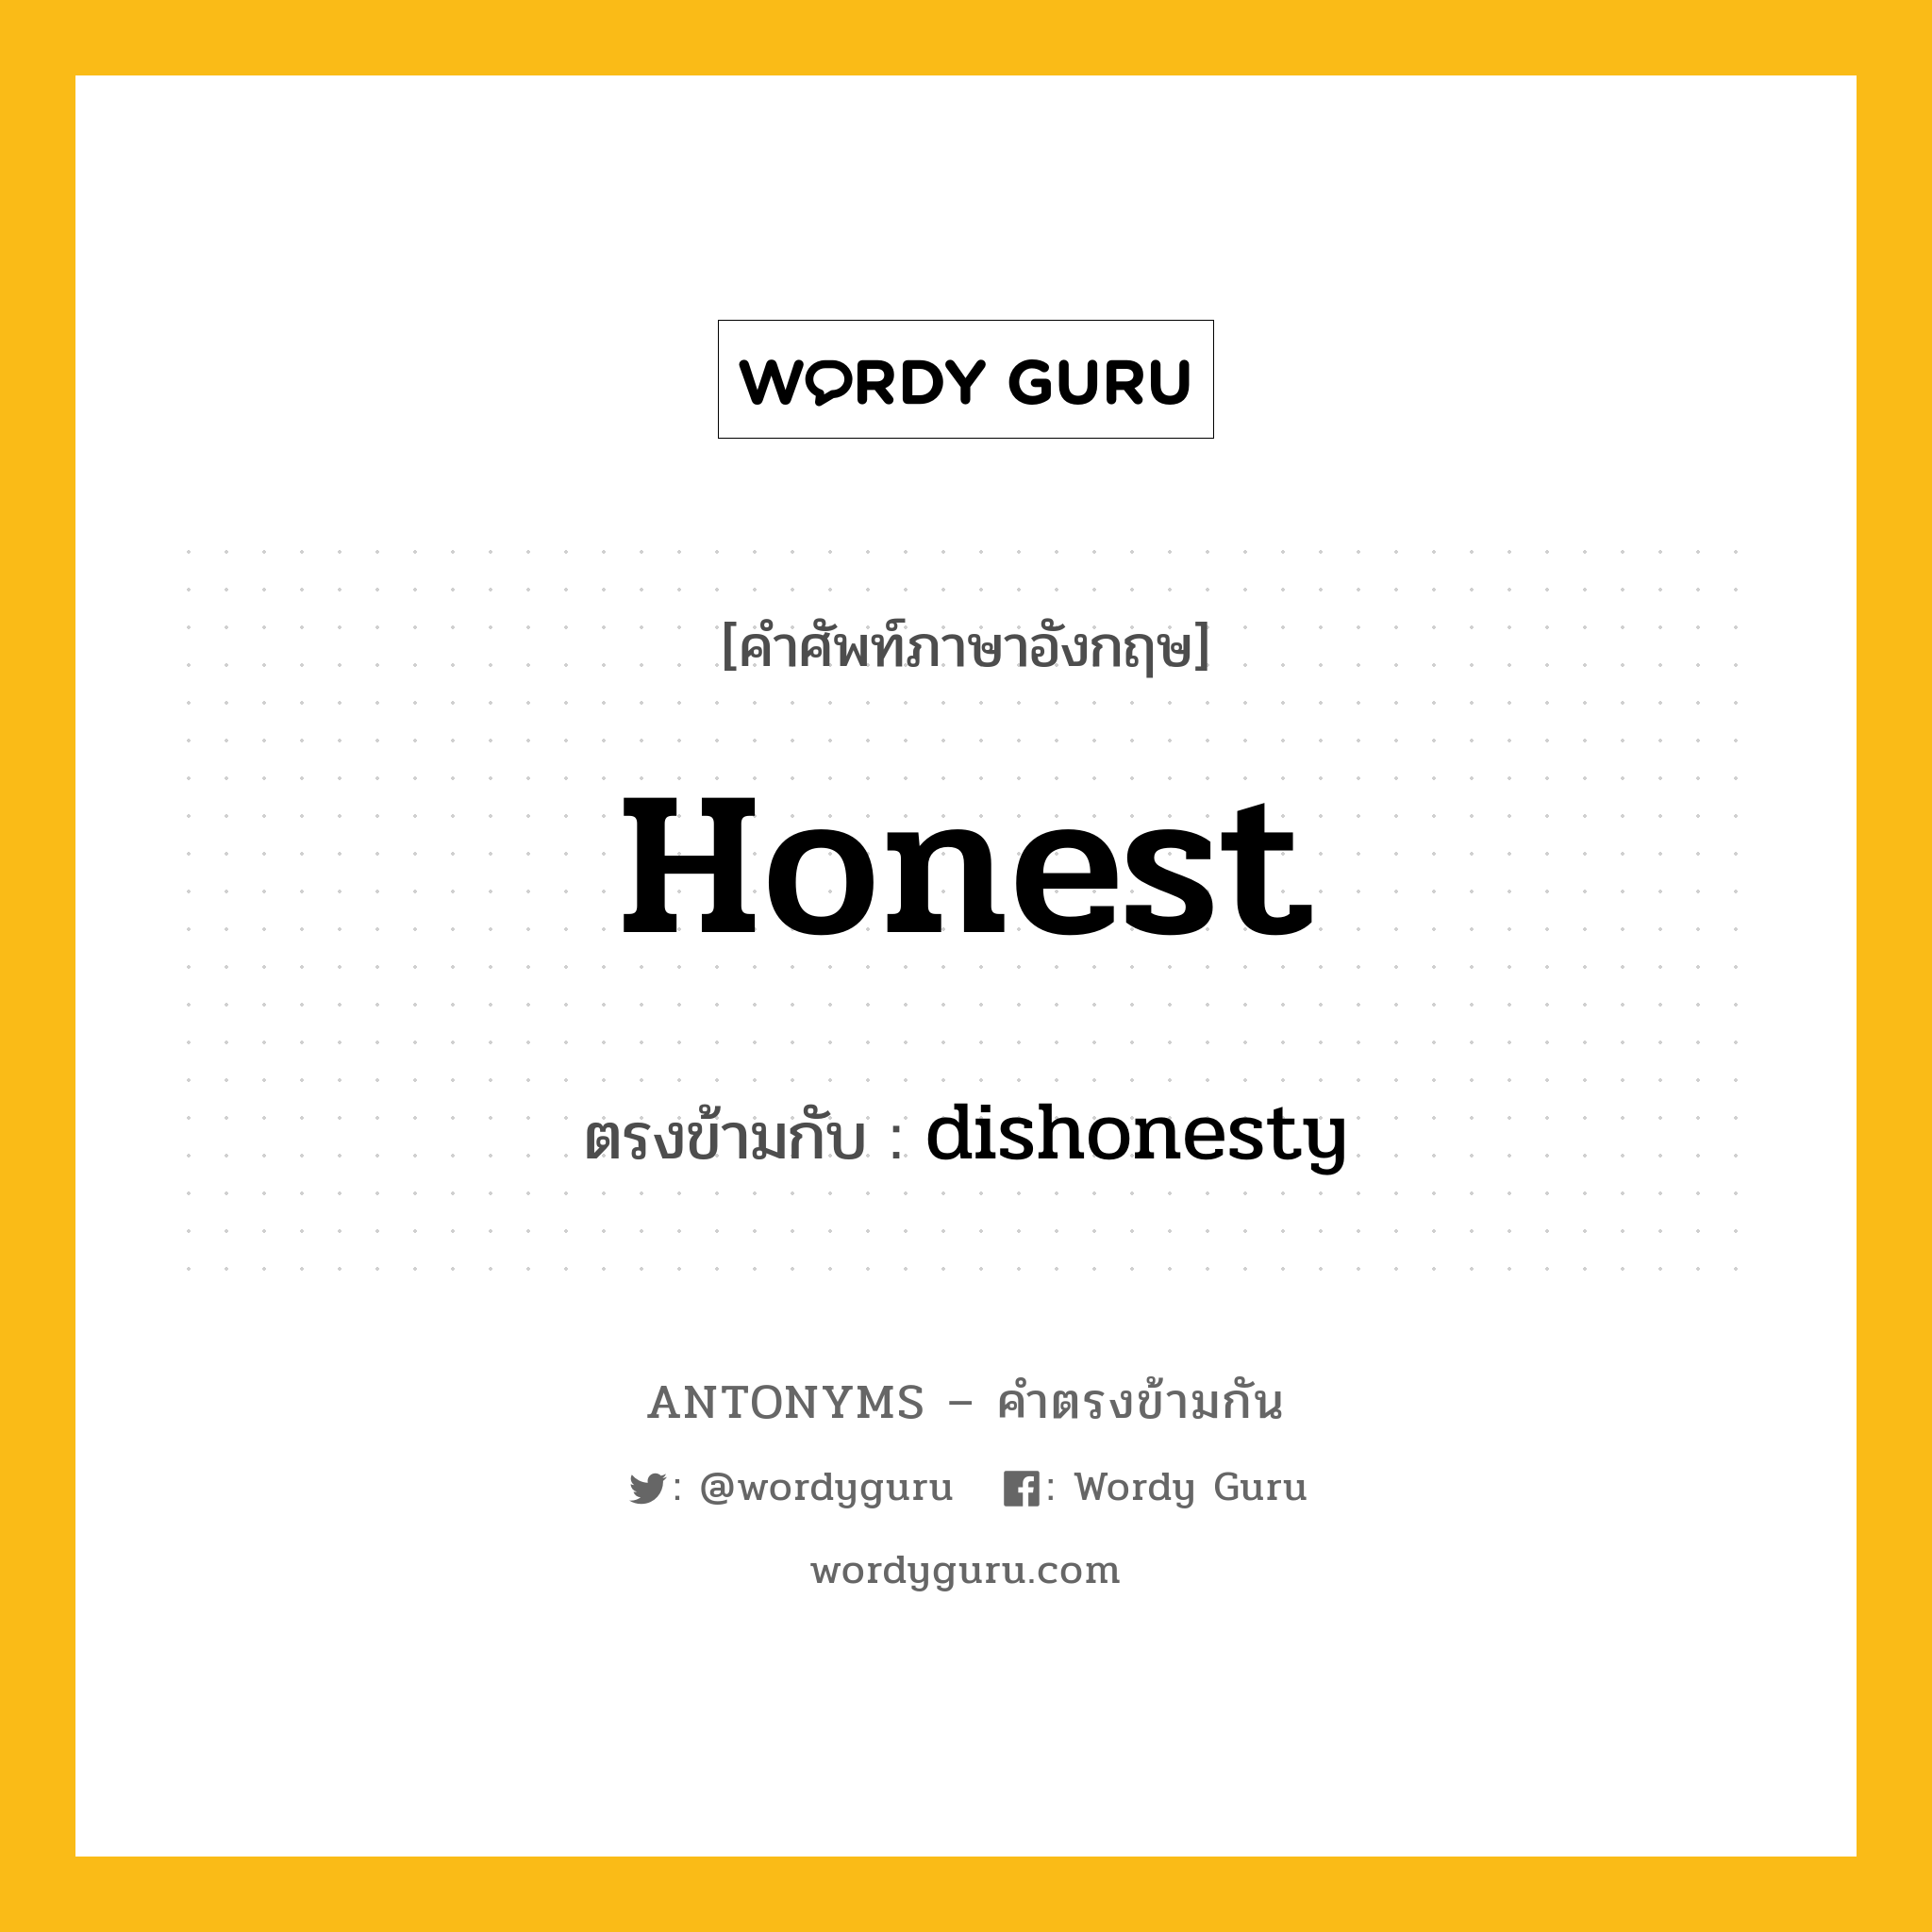 honest เป็นคำตรงข้ามกับคำไหนบ้าง?, คำศัพท์ภาษาอังกฤษ honest ตรงข้ามกับ dishonesty หมวด dishonesty